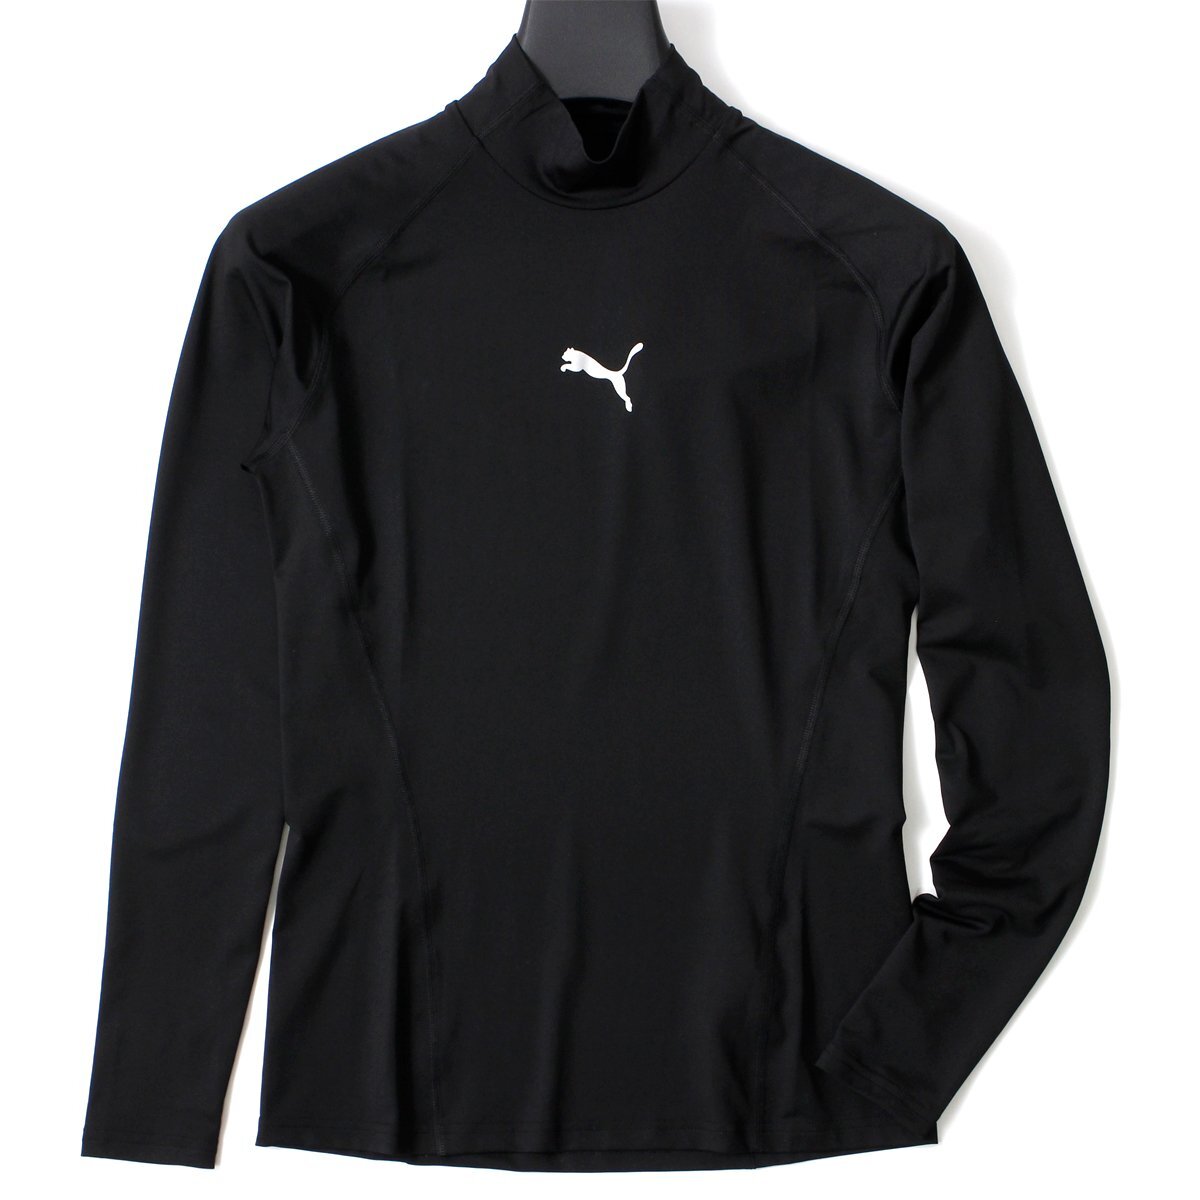  новый товар PUMA Puma Golf . рекомендация с высоким воротником рубашка с длинным рукавом XL внутренний нижний mok шея мужской спорт одежда чёрный *CC2231B